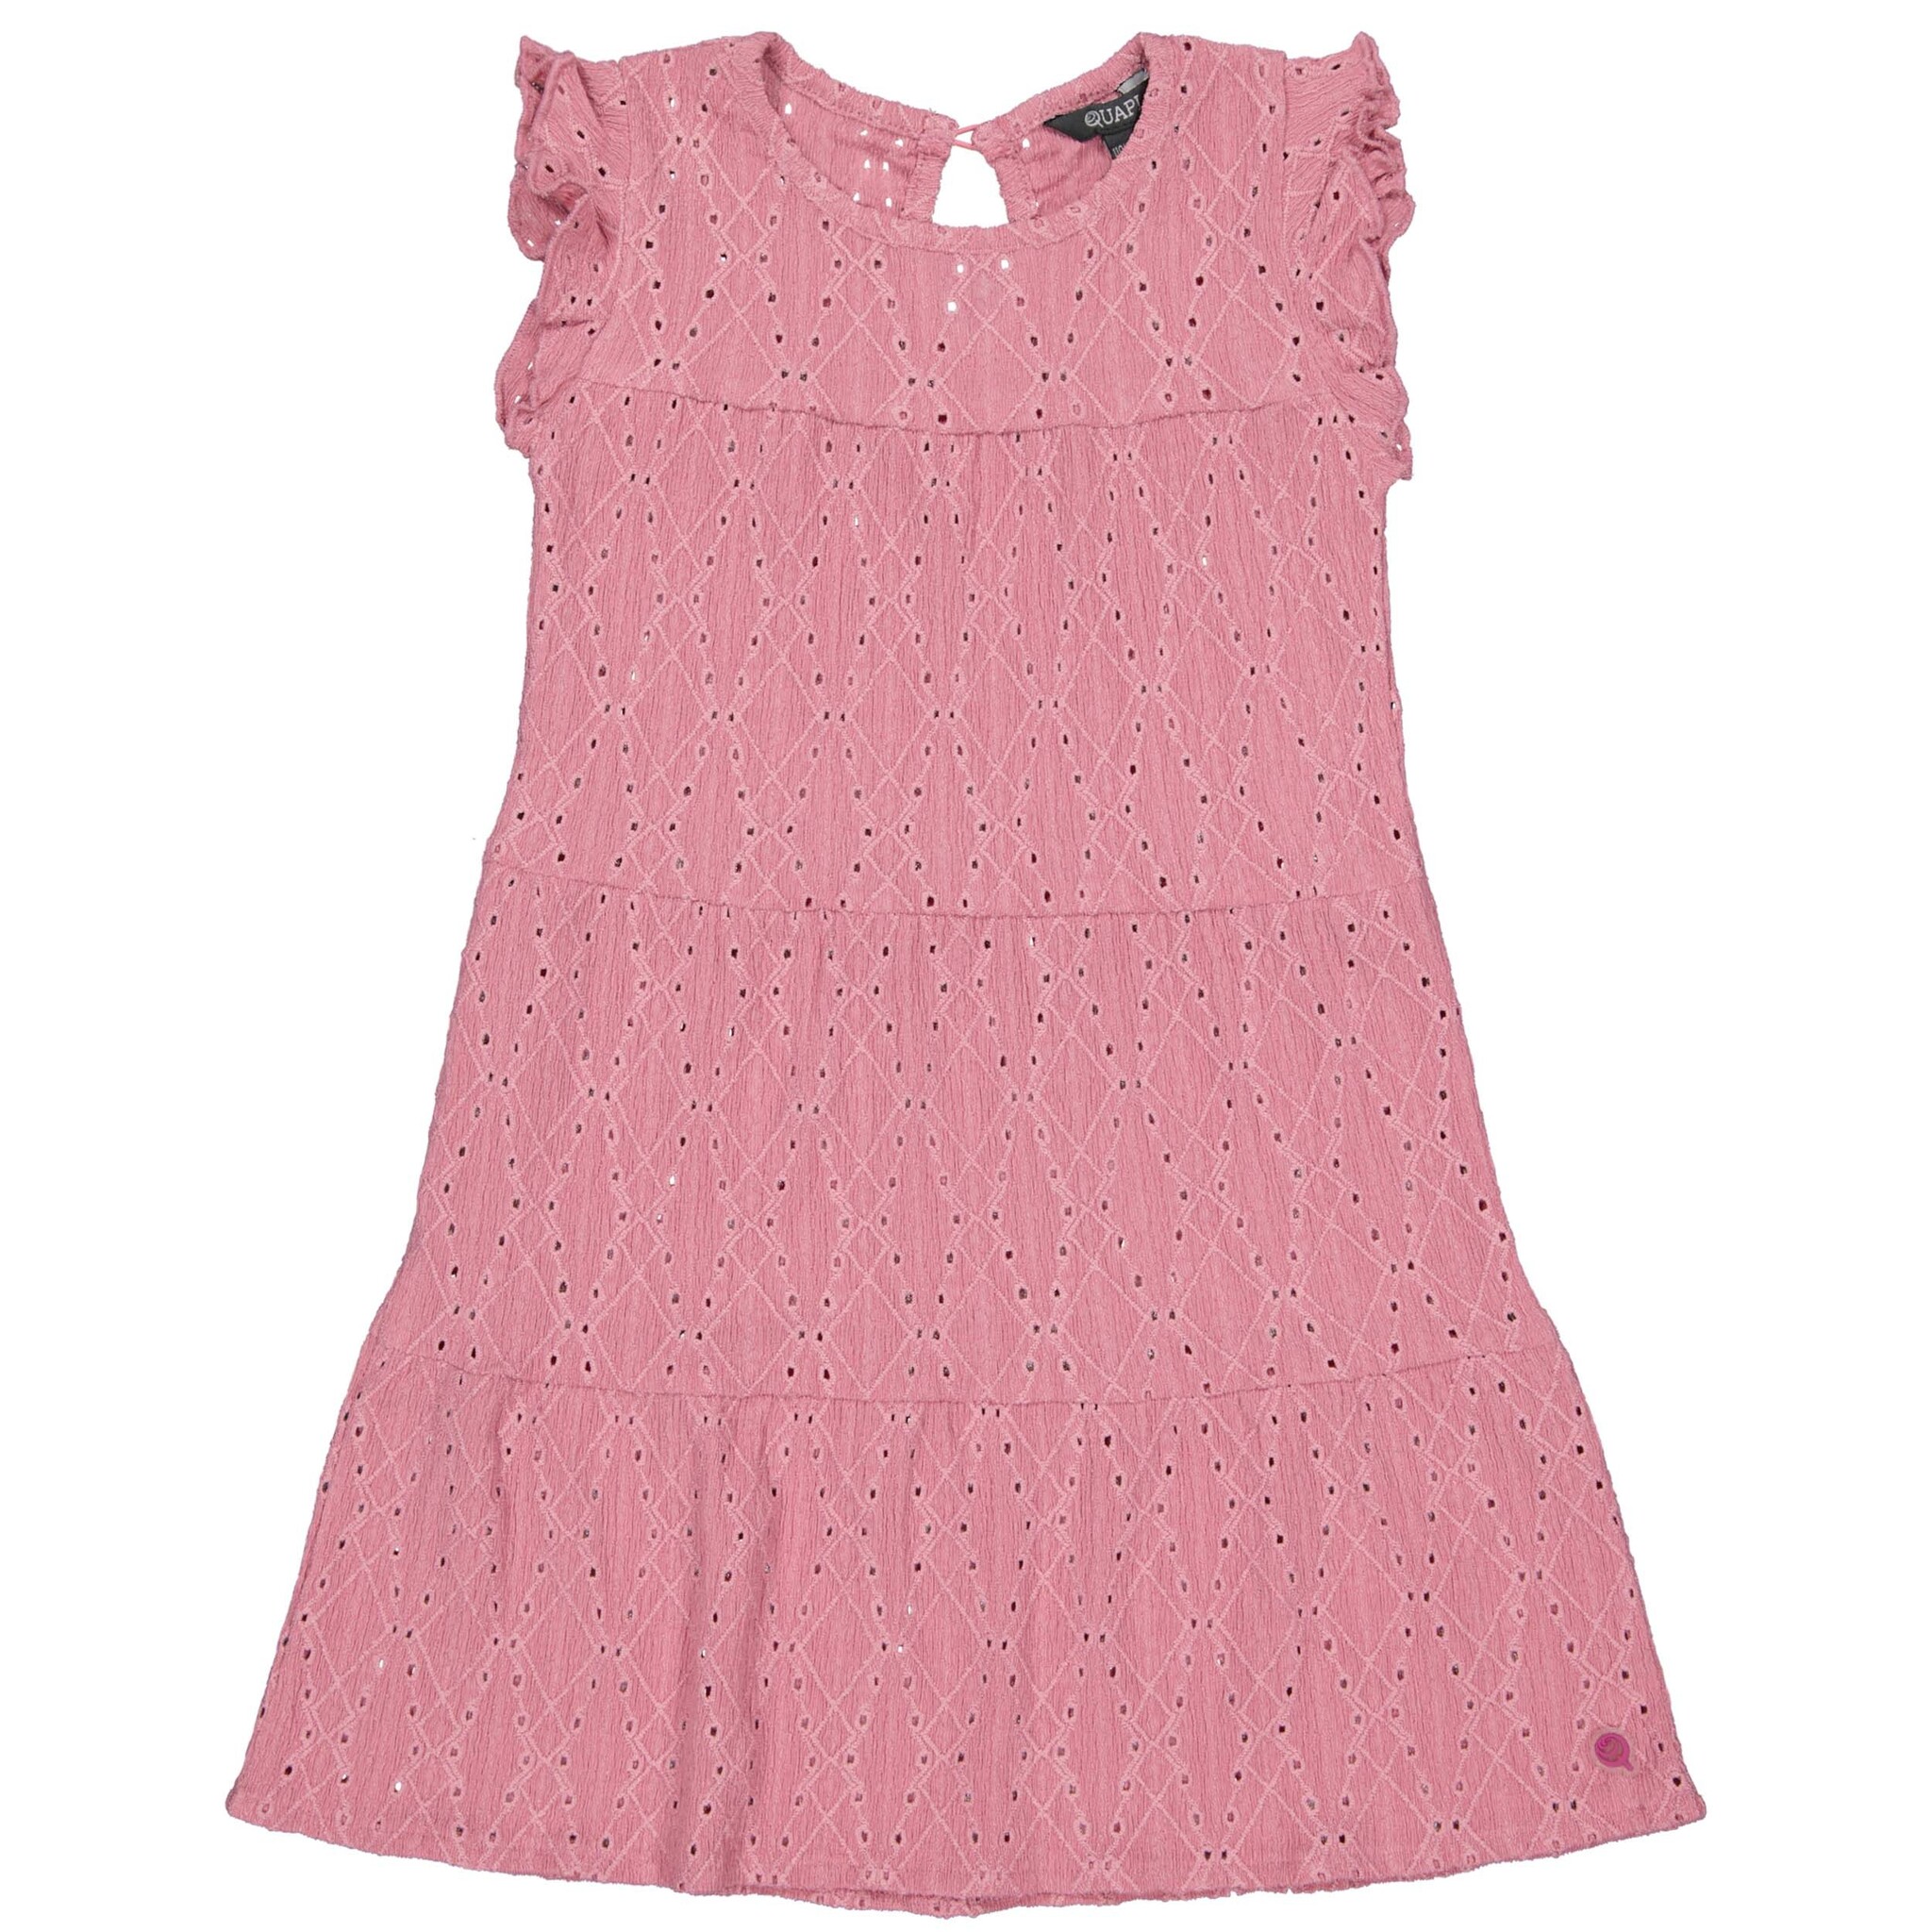 Meisjes jurk - Berra - Candy roze